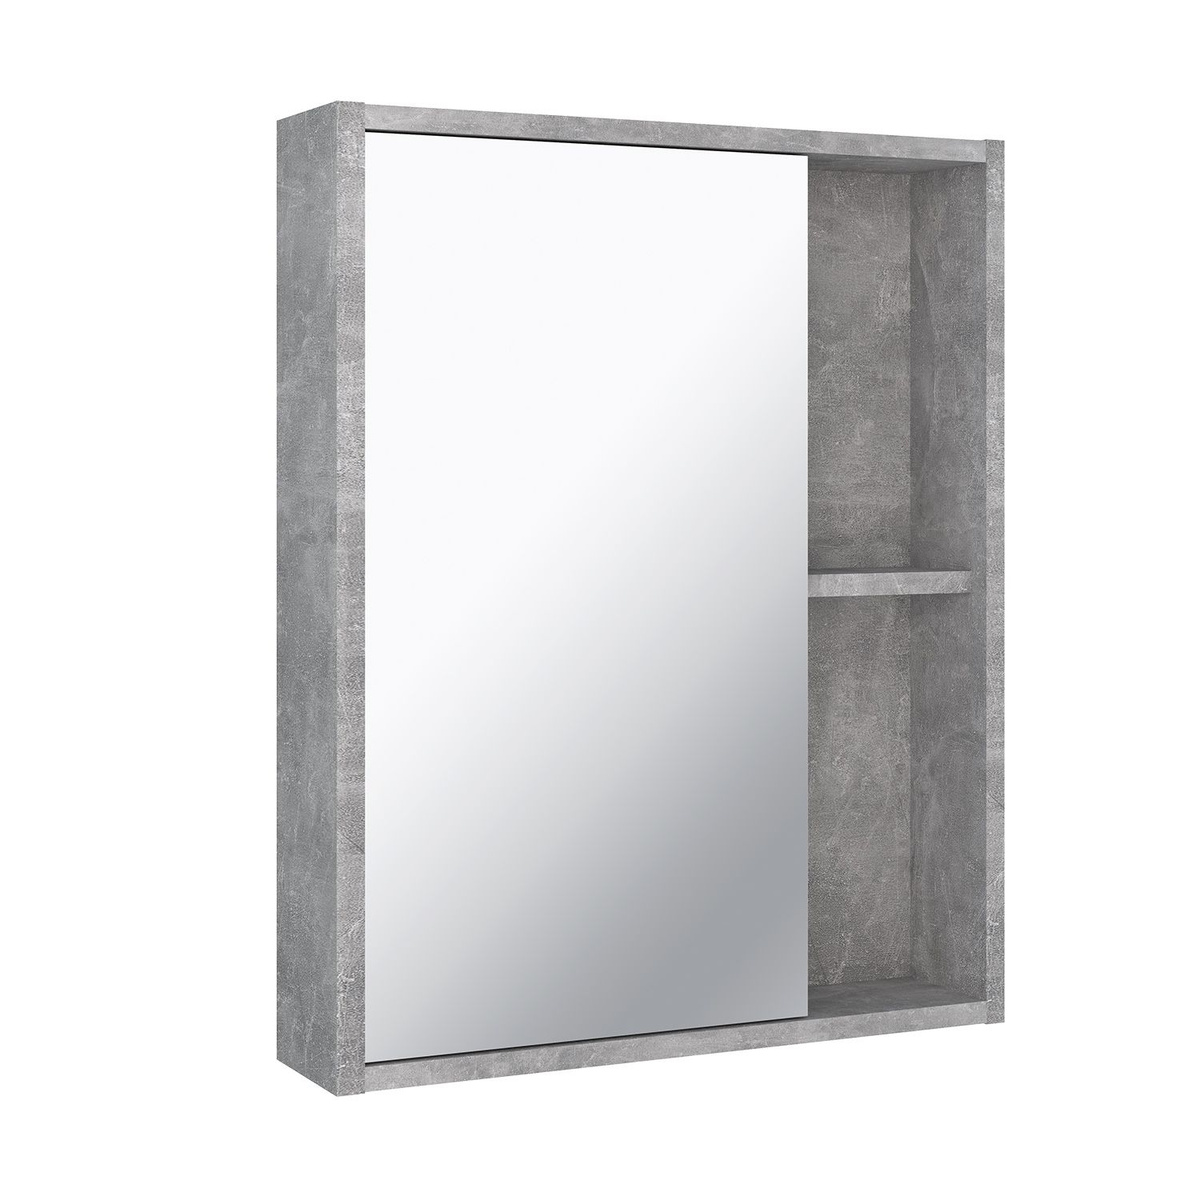 Зеркало шкаф для ванной, Runo, Эко 52, серый бетон ,Текст при отключенной в браузере загрузке изображений